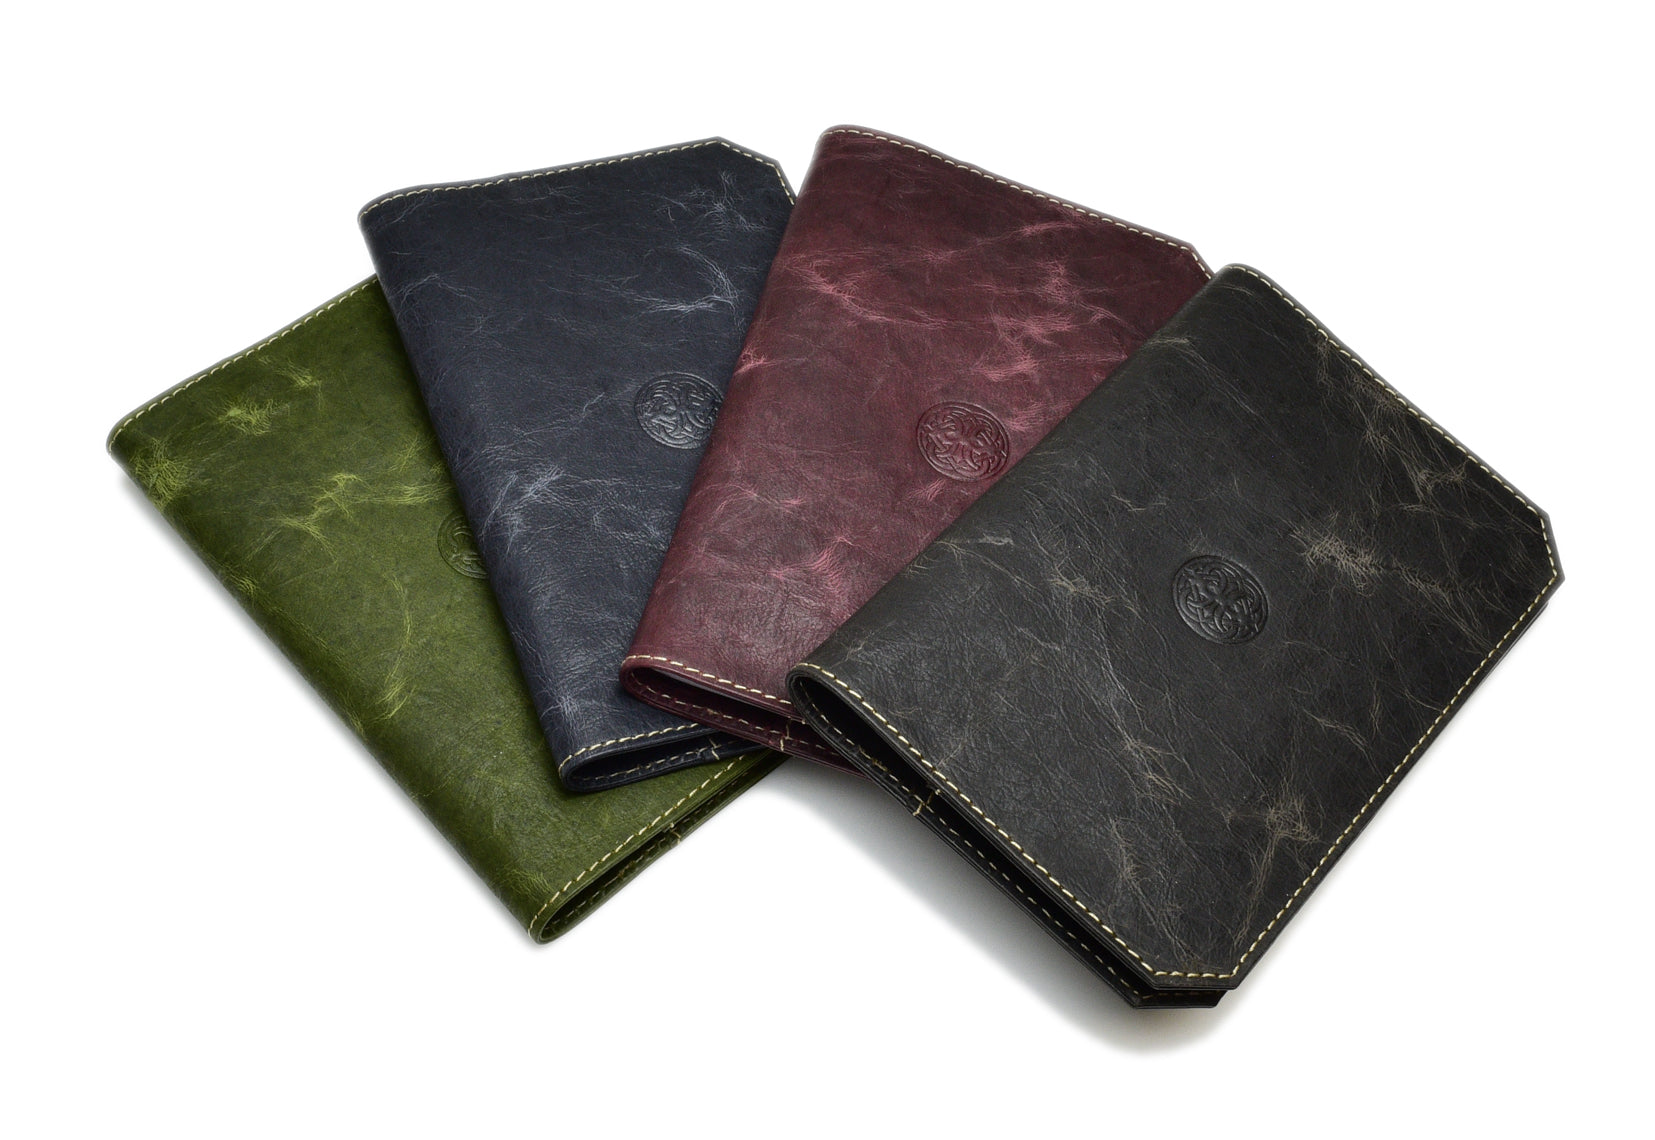 Leather Moleskine Pocket Cover - Natural